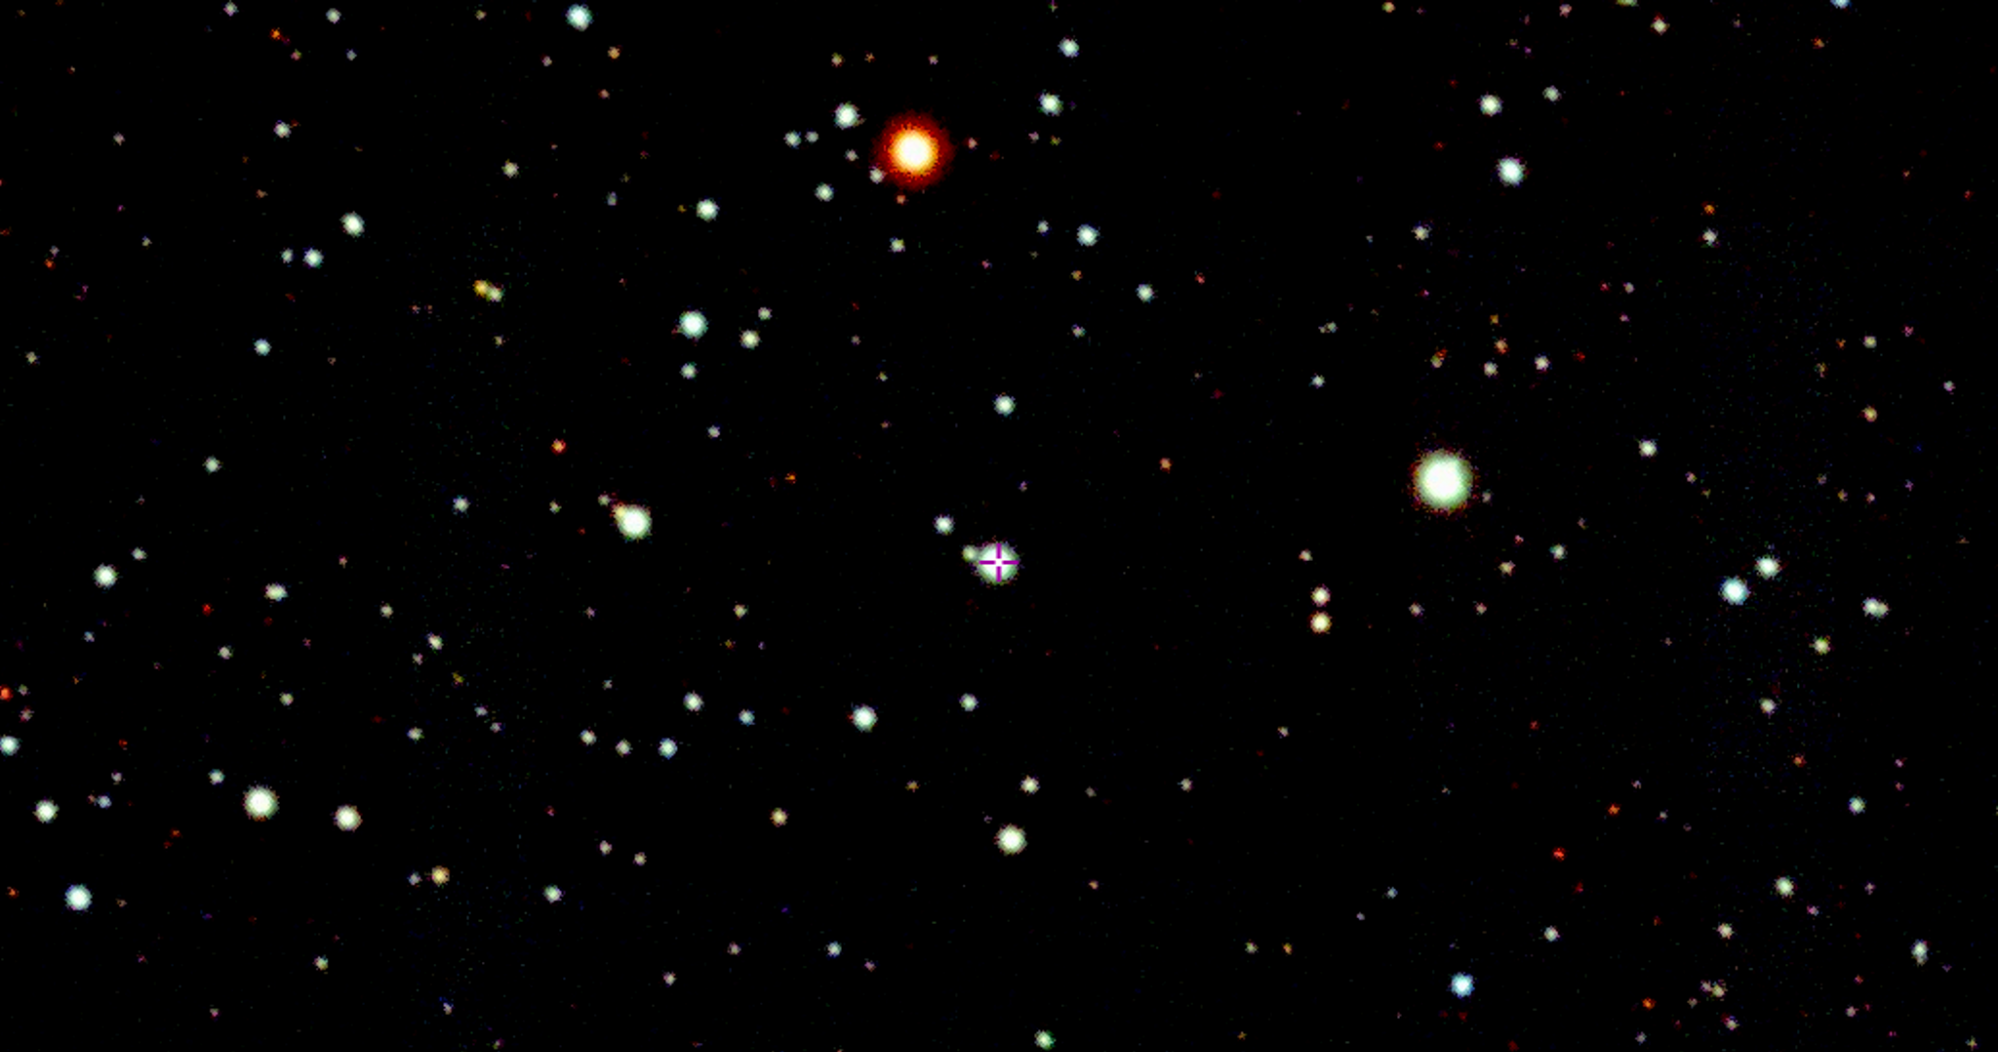 银河系边缘探测到罕见极超新星SMSS J200322.54-114203.3爆炸